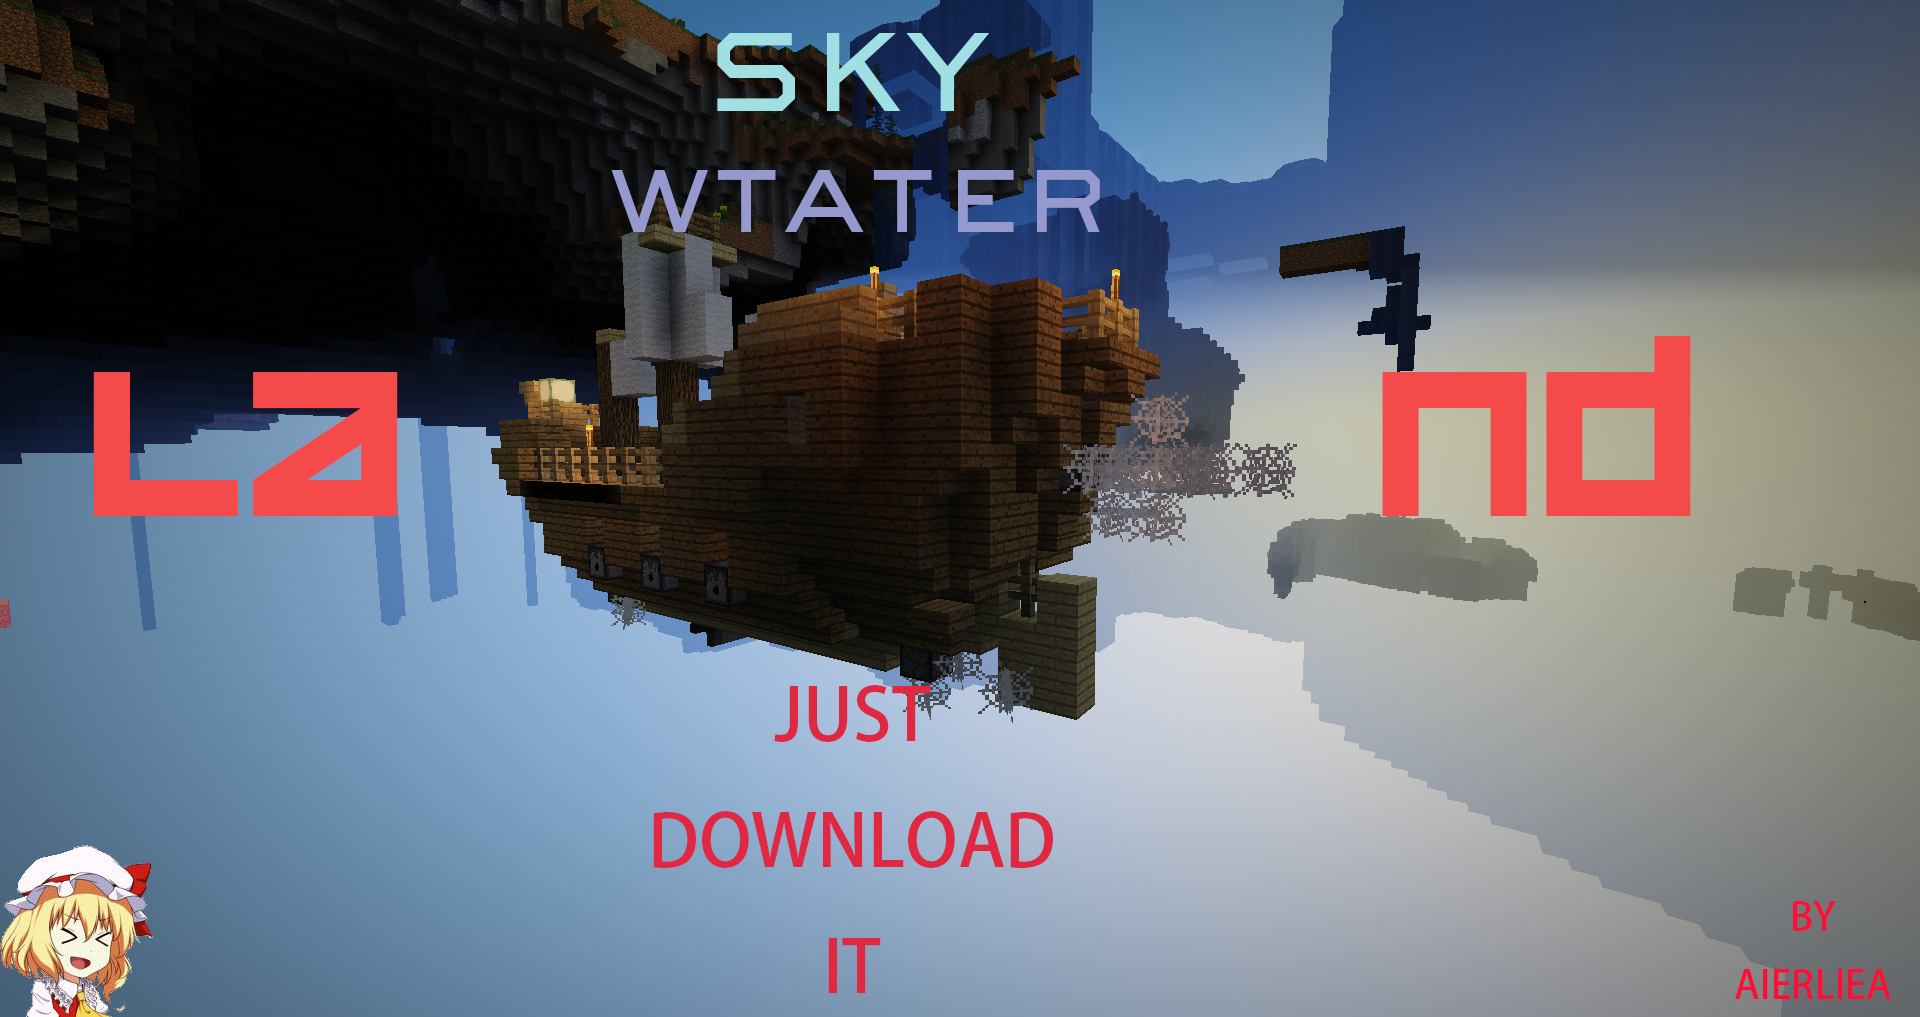 Sky Water Land 空中海岛生存mc1 13 已跑路 展示 共享 Minecraft 我的世界 中文论坛 手机版 Powered By Discuz